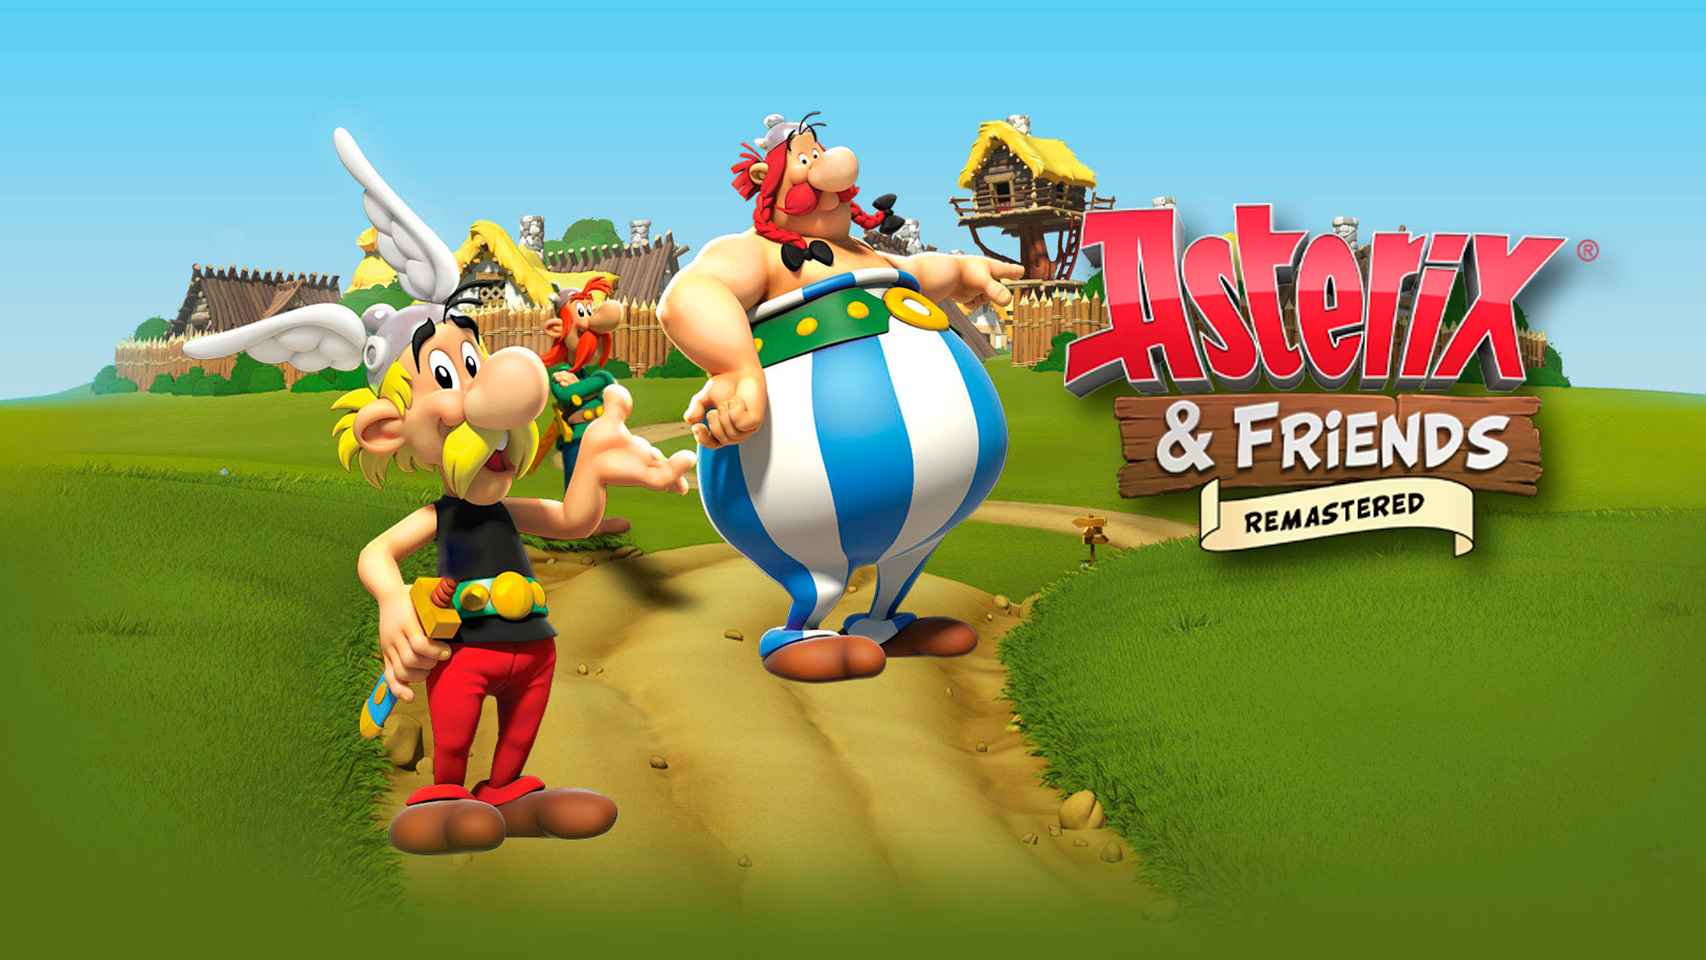 Asterix & Friends ya disponible en Android con su lanzamiento global